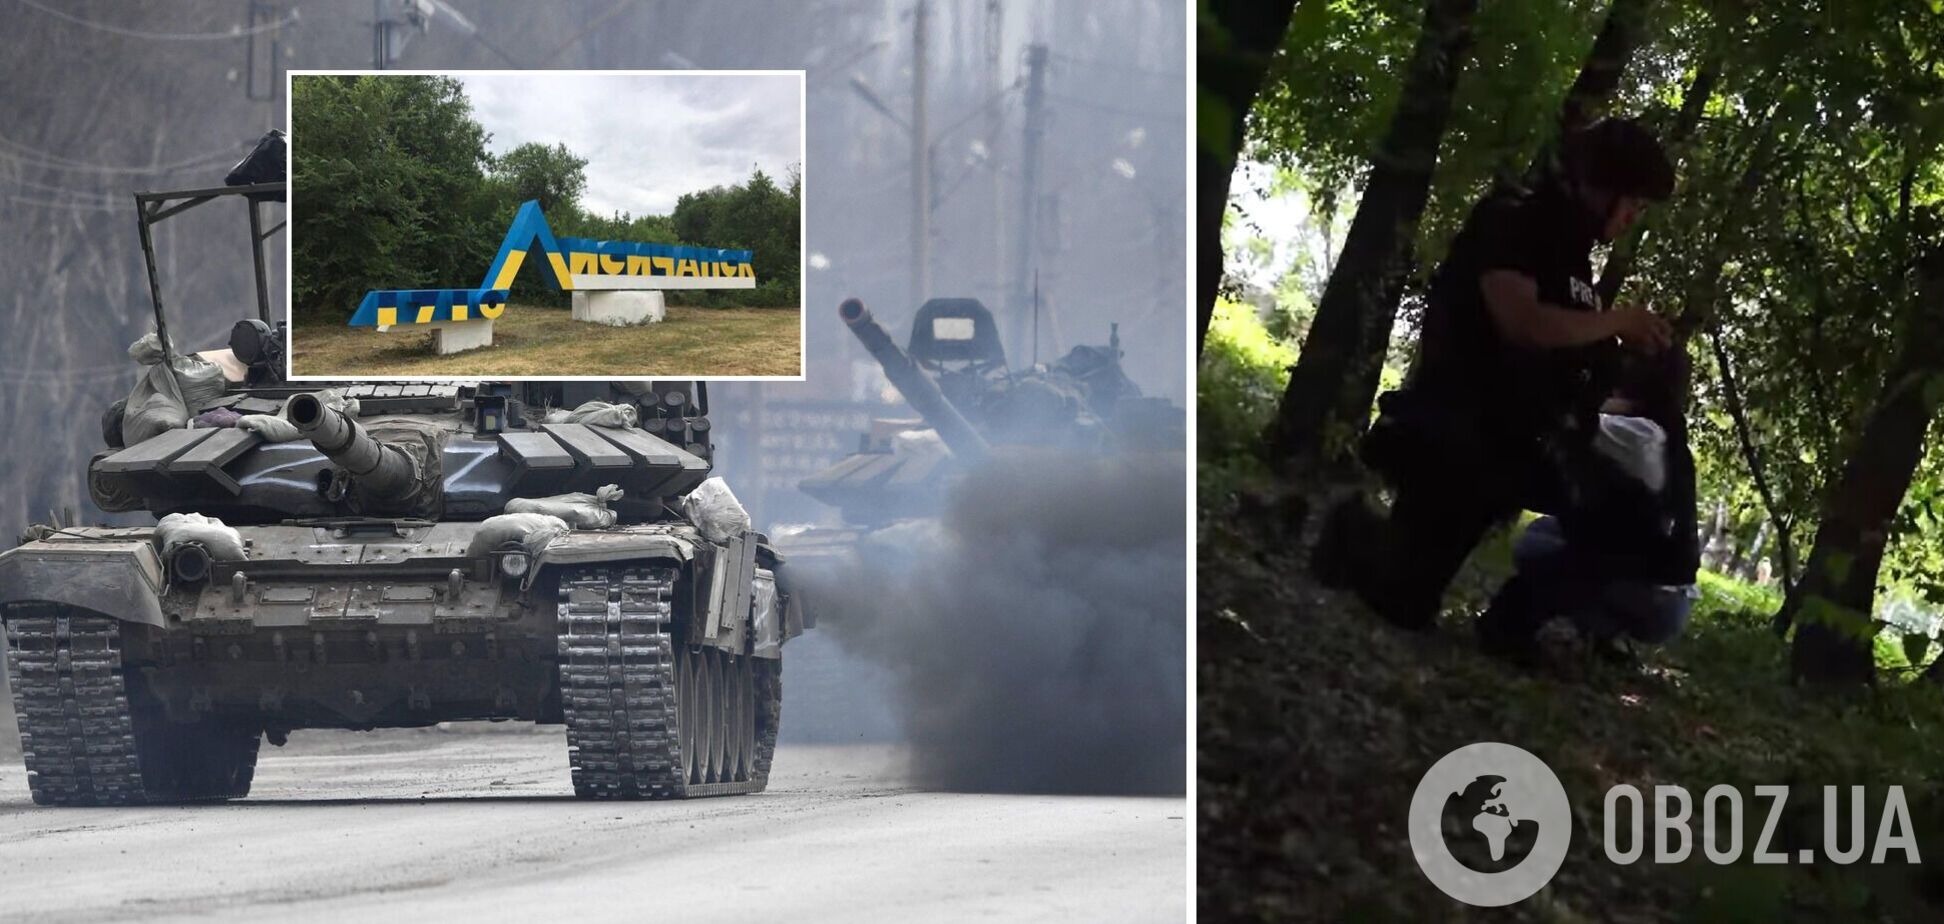 Украинские журналисты попали под обстрел оккупантов в центре Лисичанска. Видео